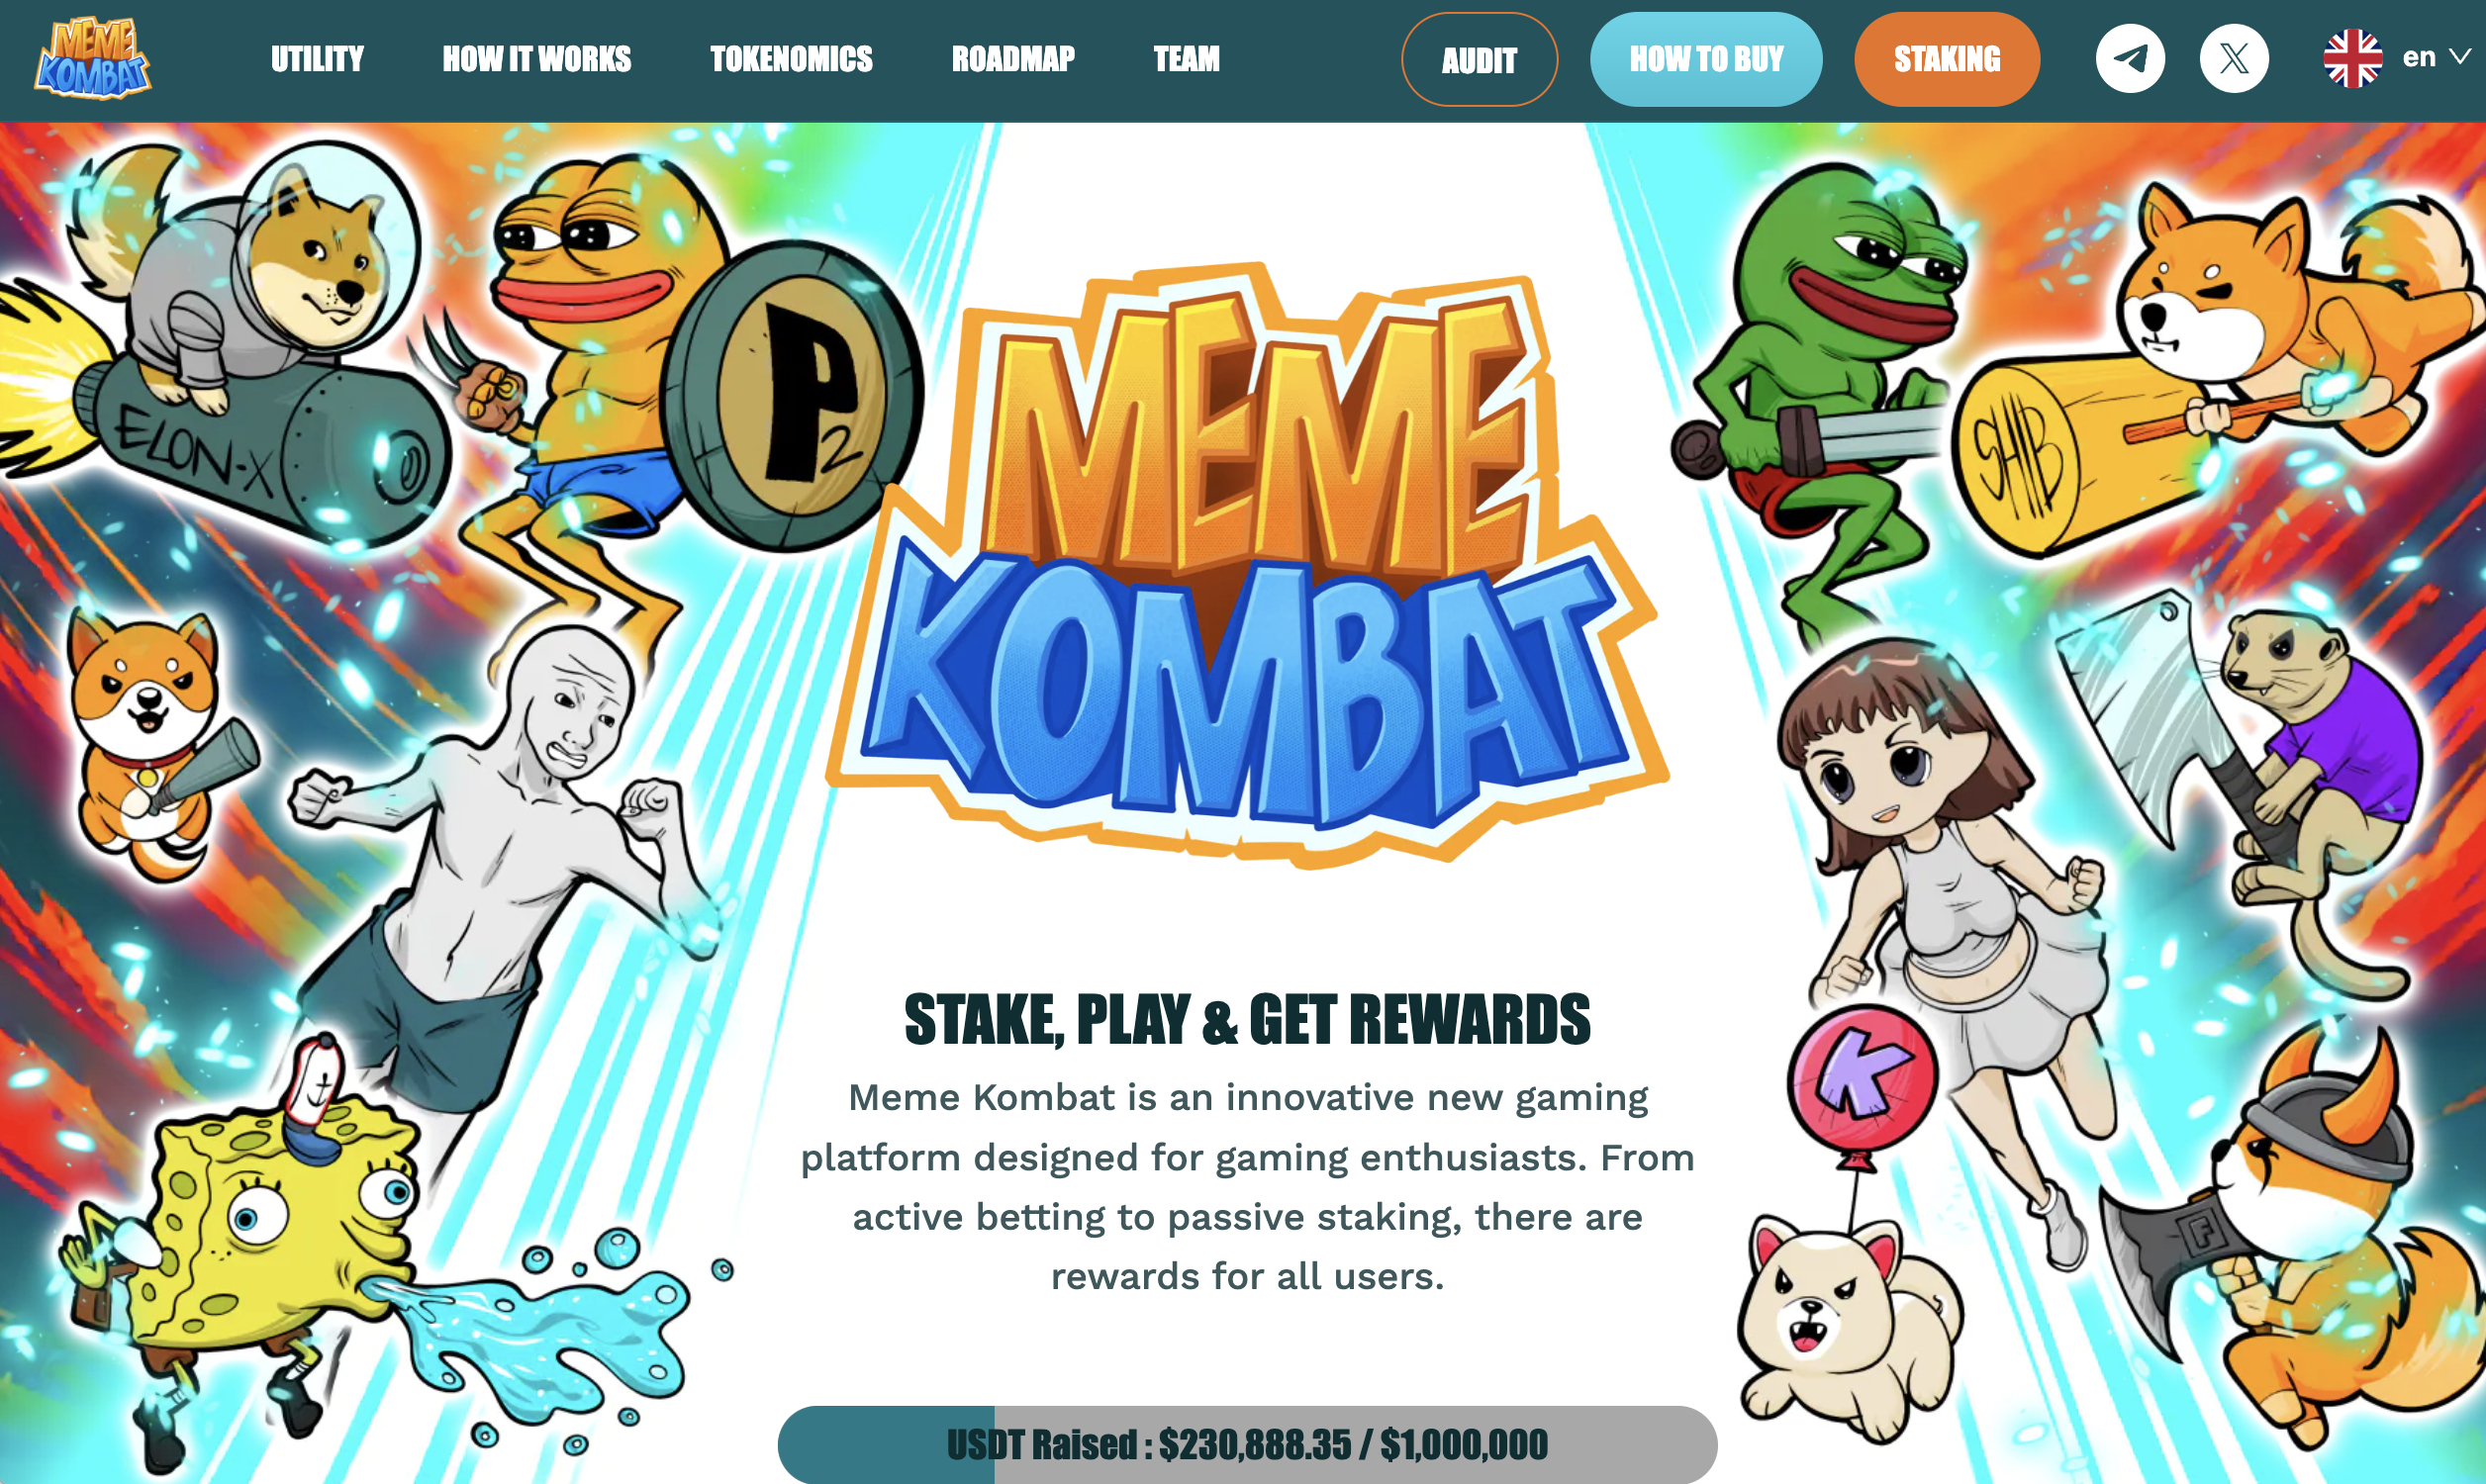 عملة الميم الجديدة لمشروع ميم كومبات (Meme Kombat) تنجح بحصد 230,000$ خلال طرحها الأوليّ، فهل يمكنها أن تصبح دوجكوين (Dogecoin) أو شيبا إينو (Shiba Inu) الجديدة؟